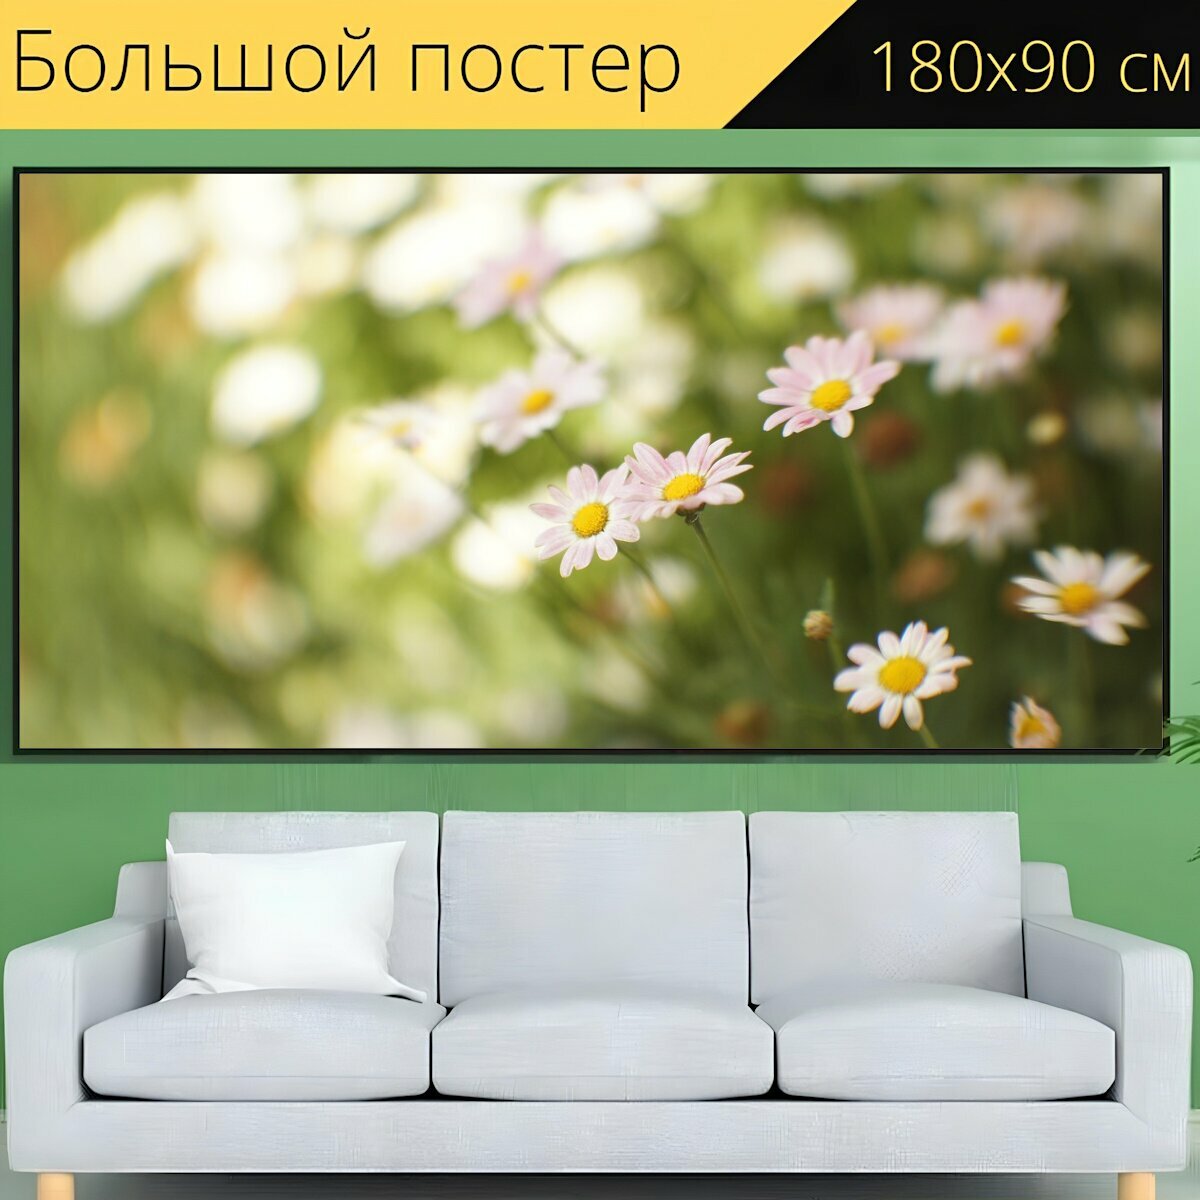 Большой постер "Цветы, весна, природа" 180 x 90 см. для интерьера